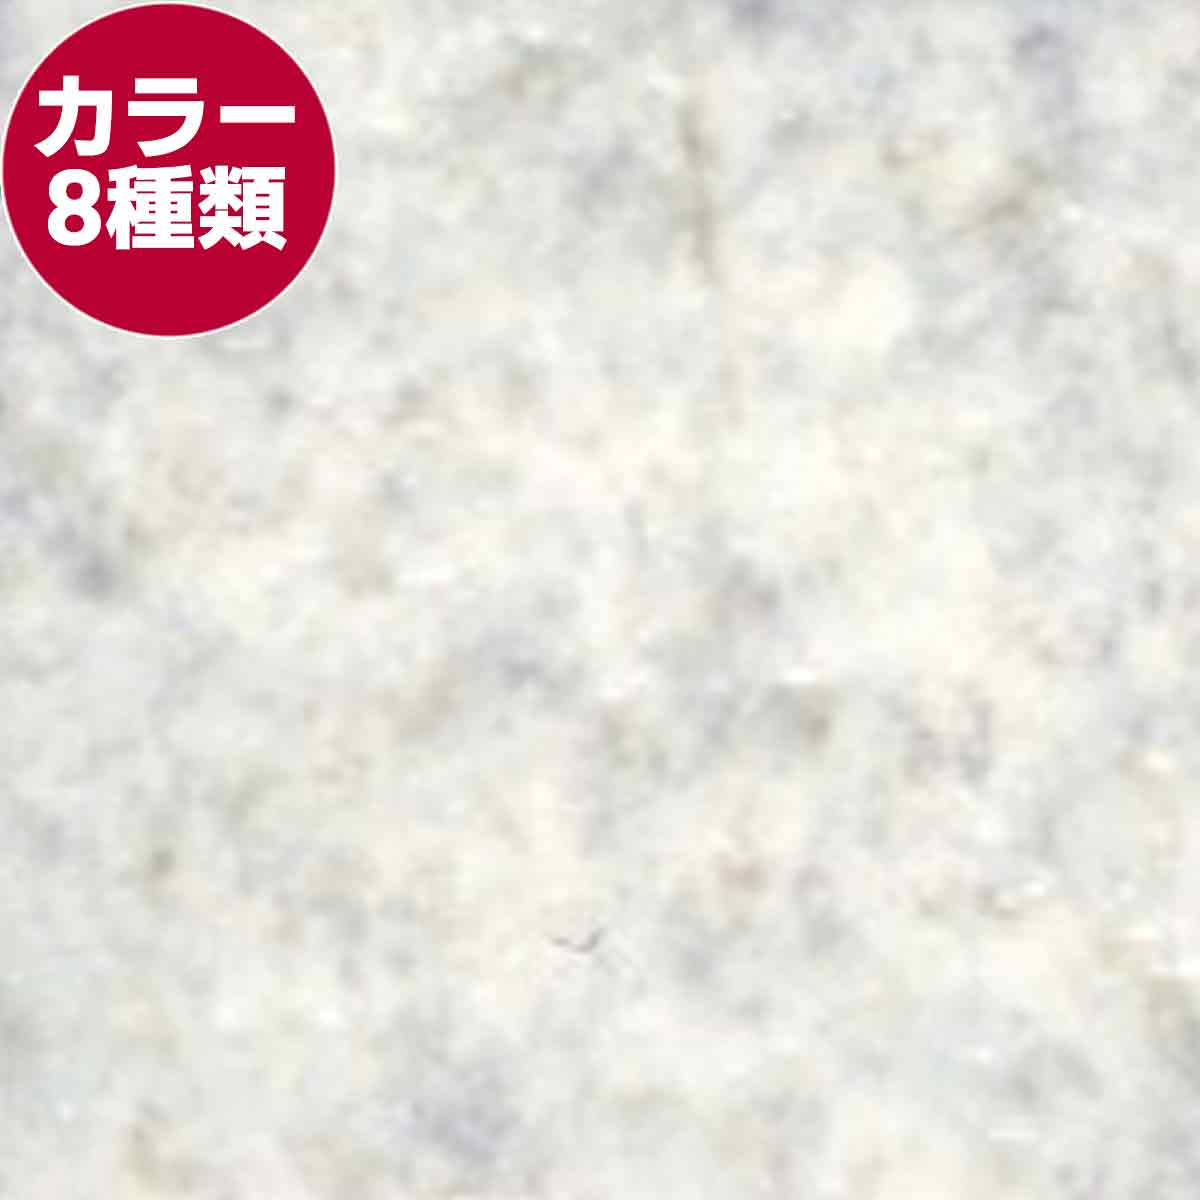 タピリューム (1820mm)